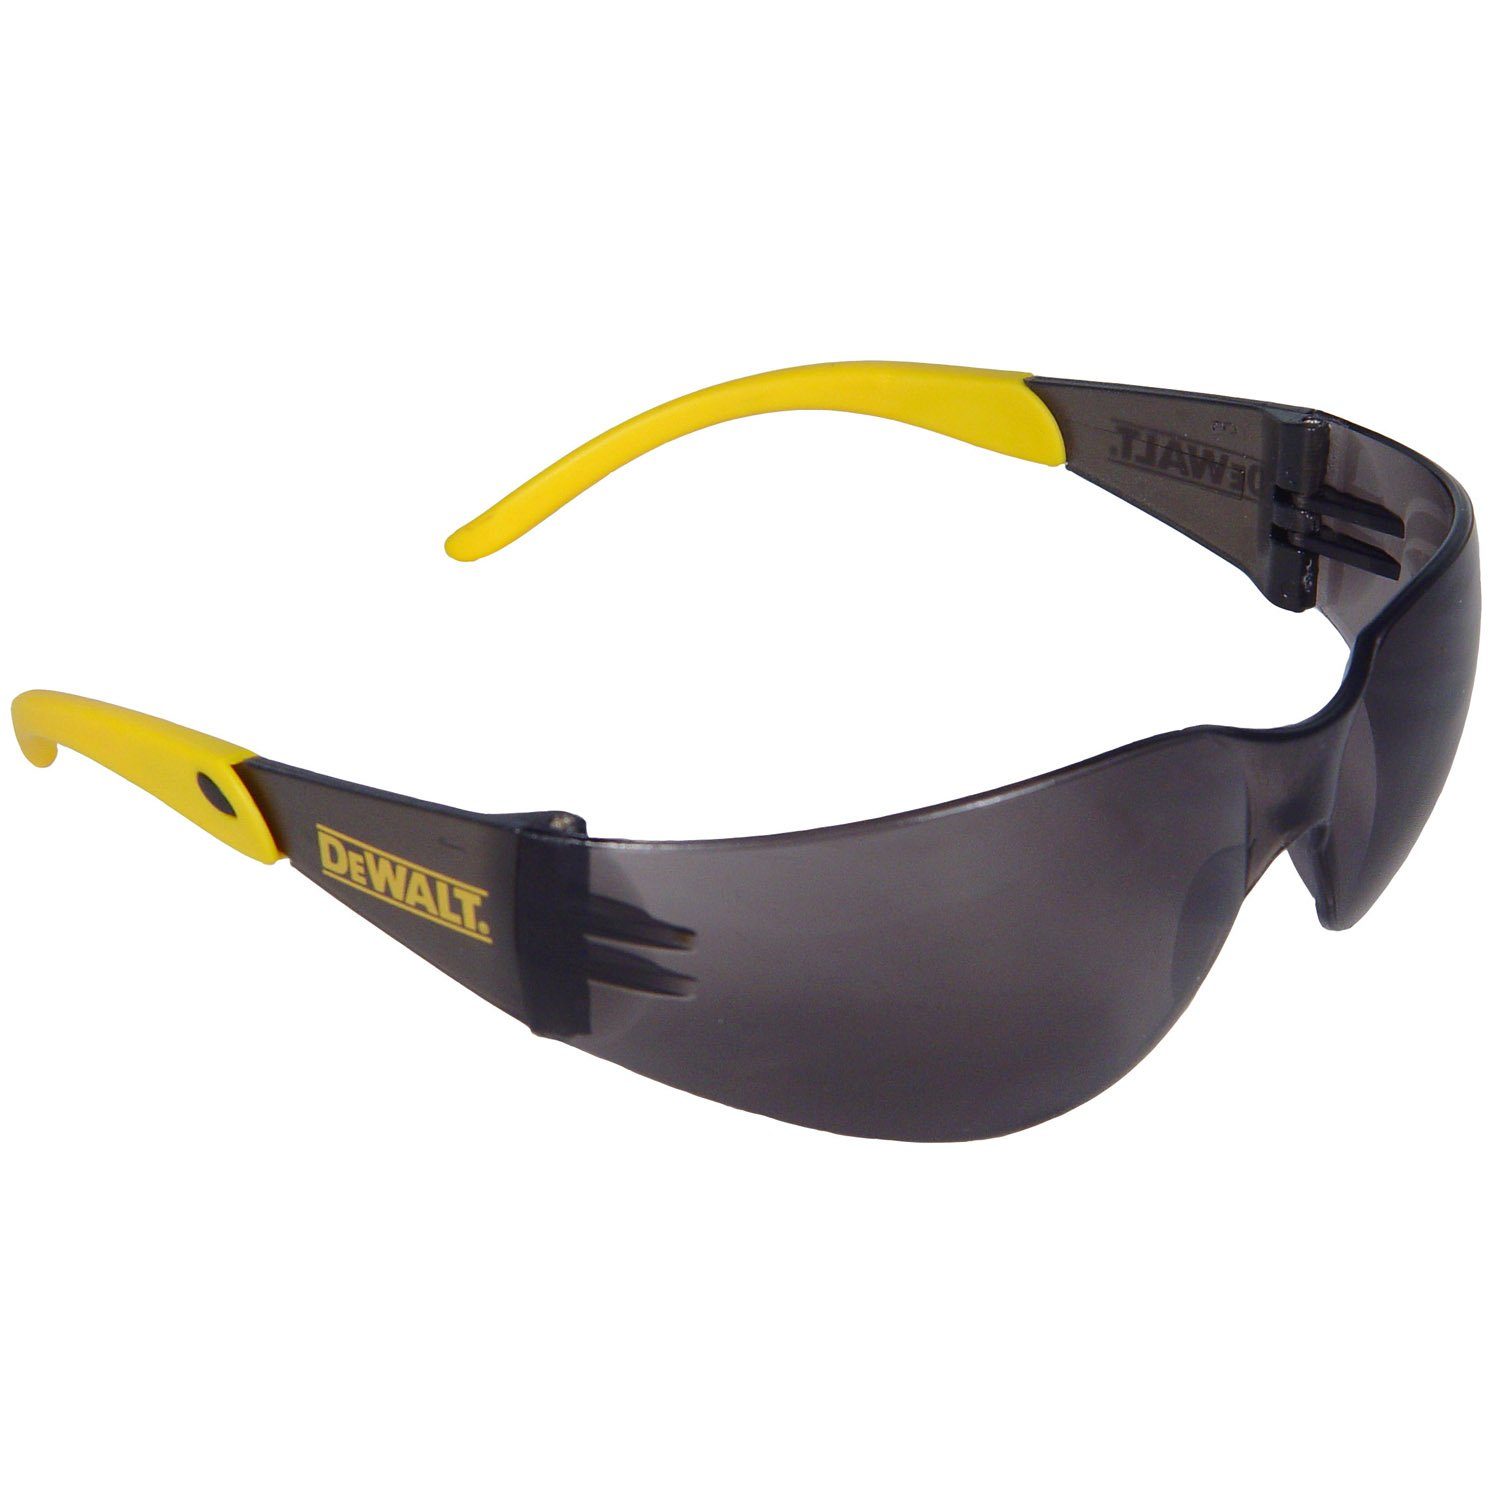 DeWalt Arbeitsschutzbrille DPG54-2DEU Protector™ Sicherheitsglas graue Tönung DIN EN 166, (3-er Pack), Polycarbonat-Glas, UVA- u. UVB-Schutz, CE 5-3.1 R1F